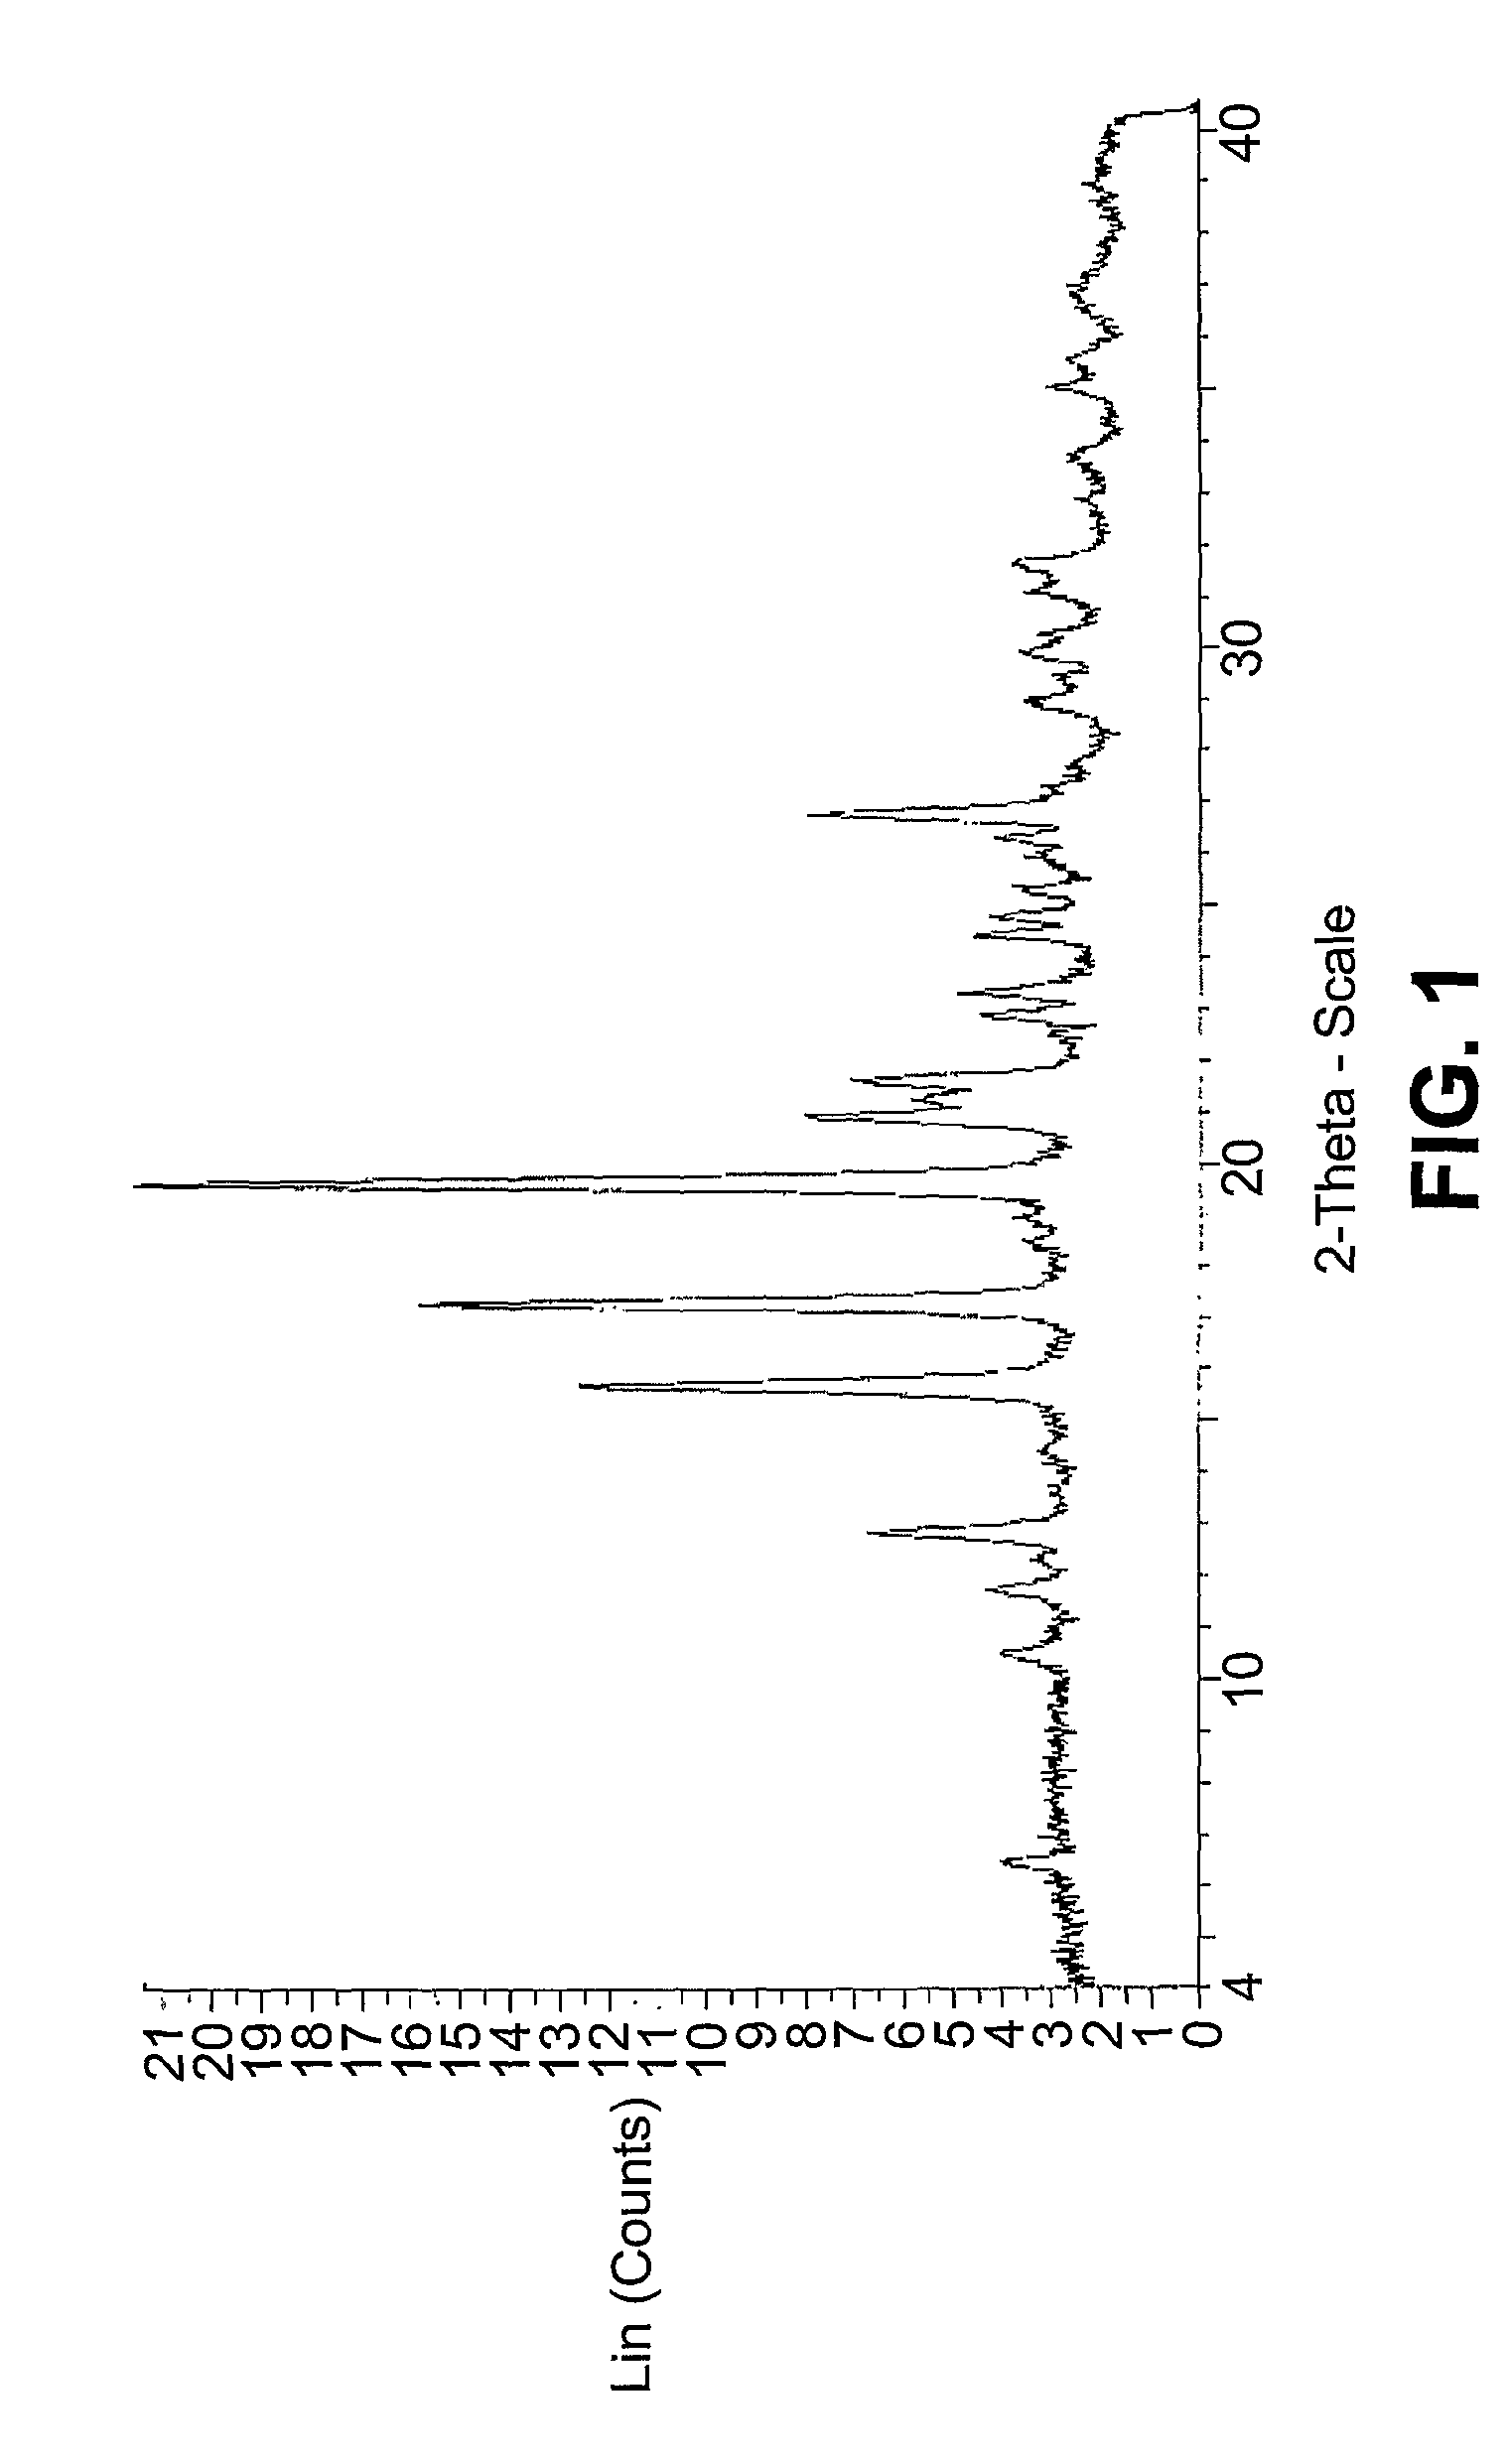 Polymorphs of a c-MET/HGFR inhibitor